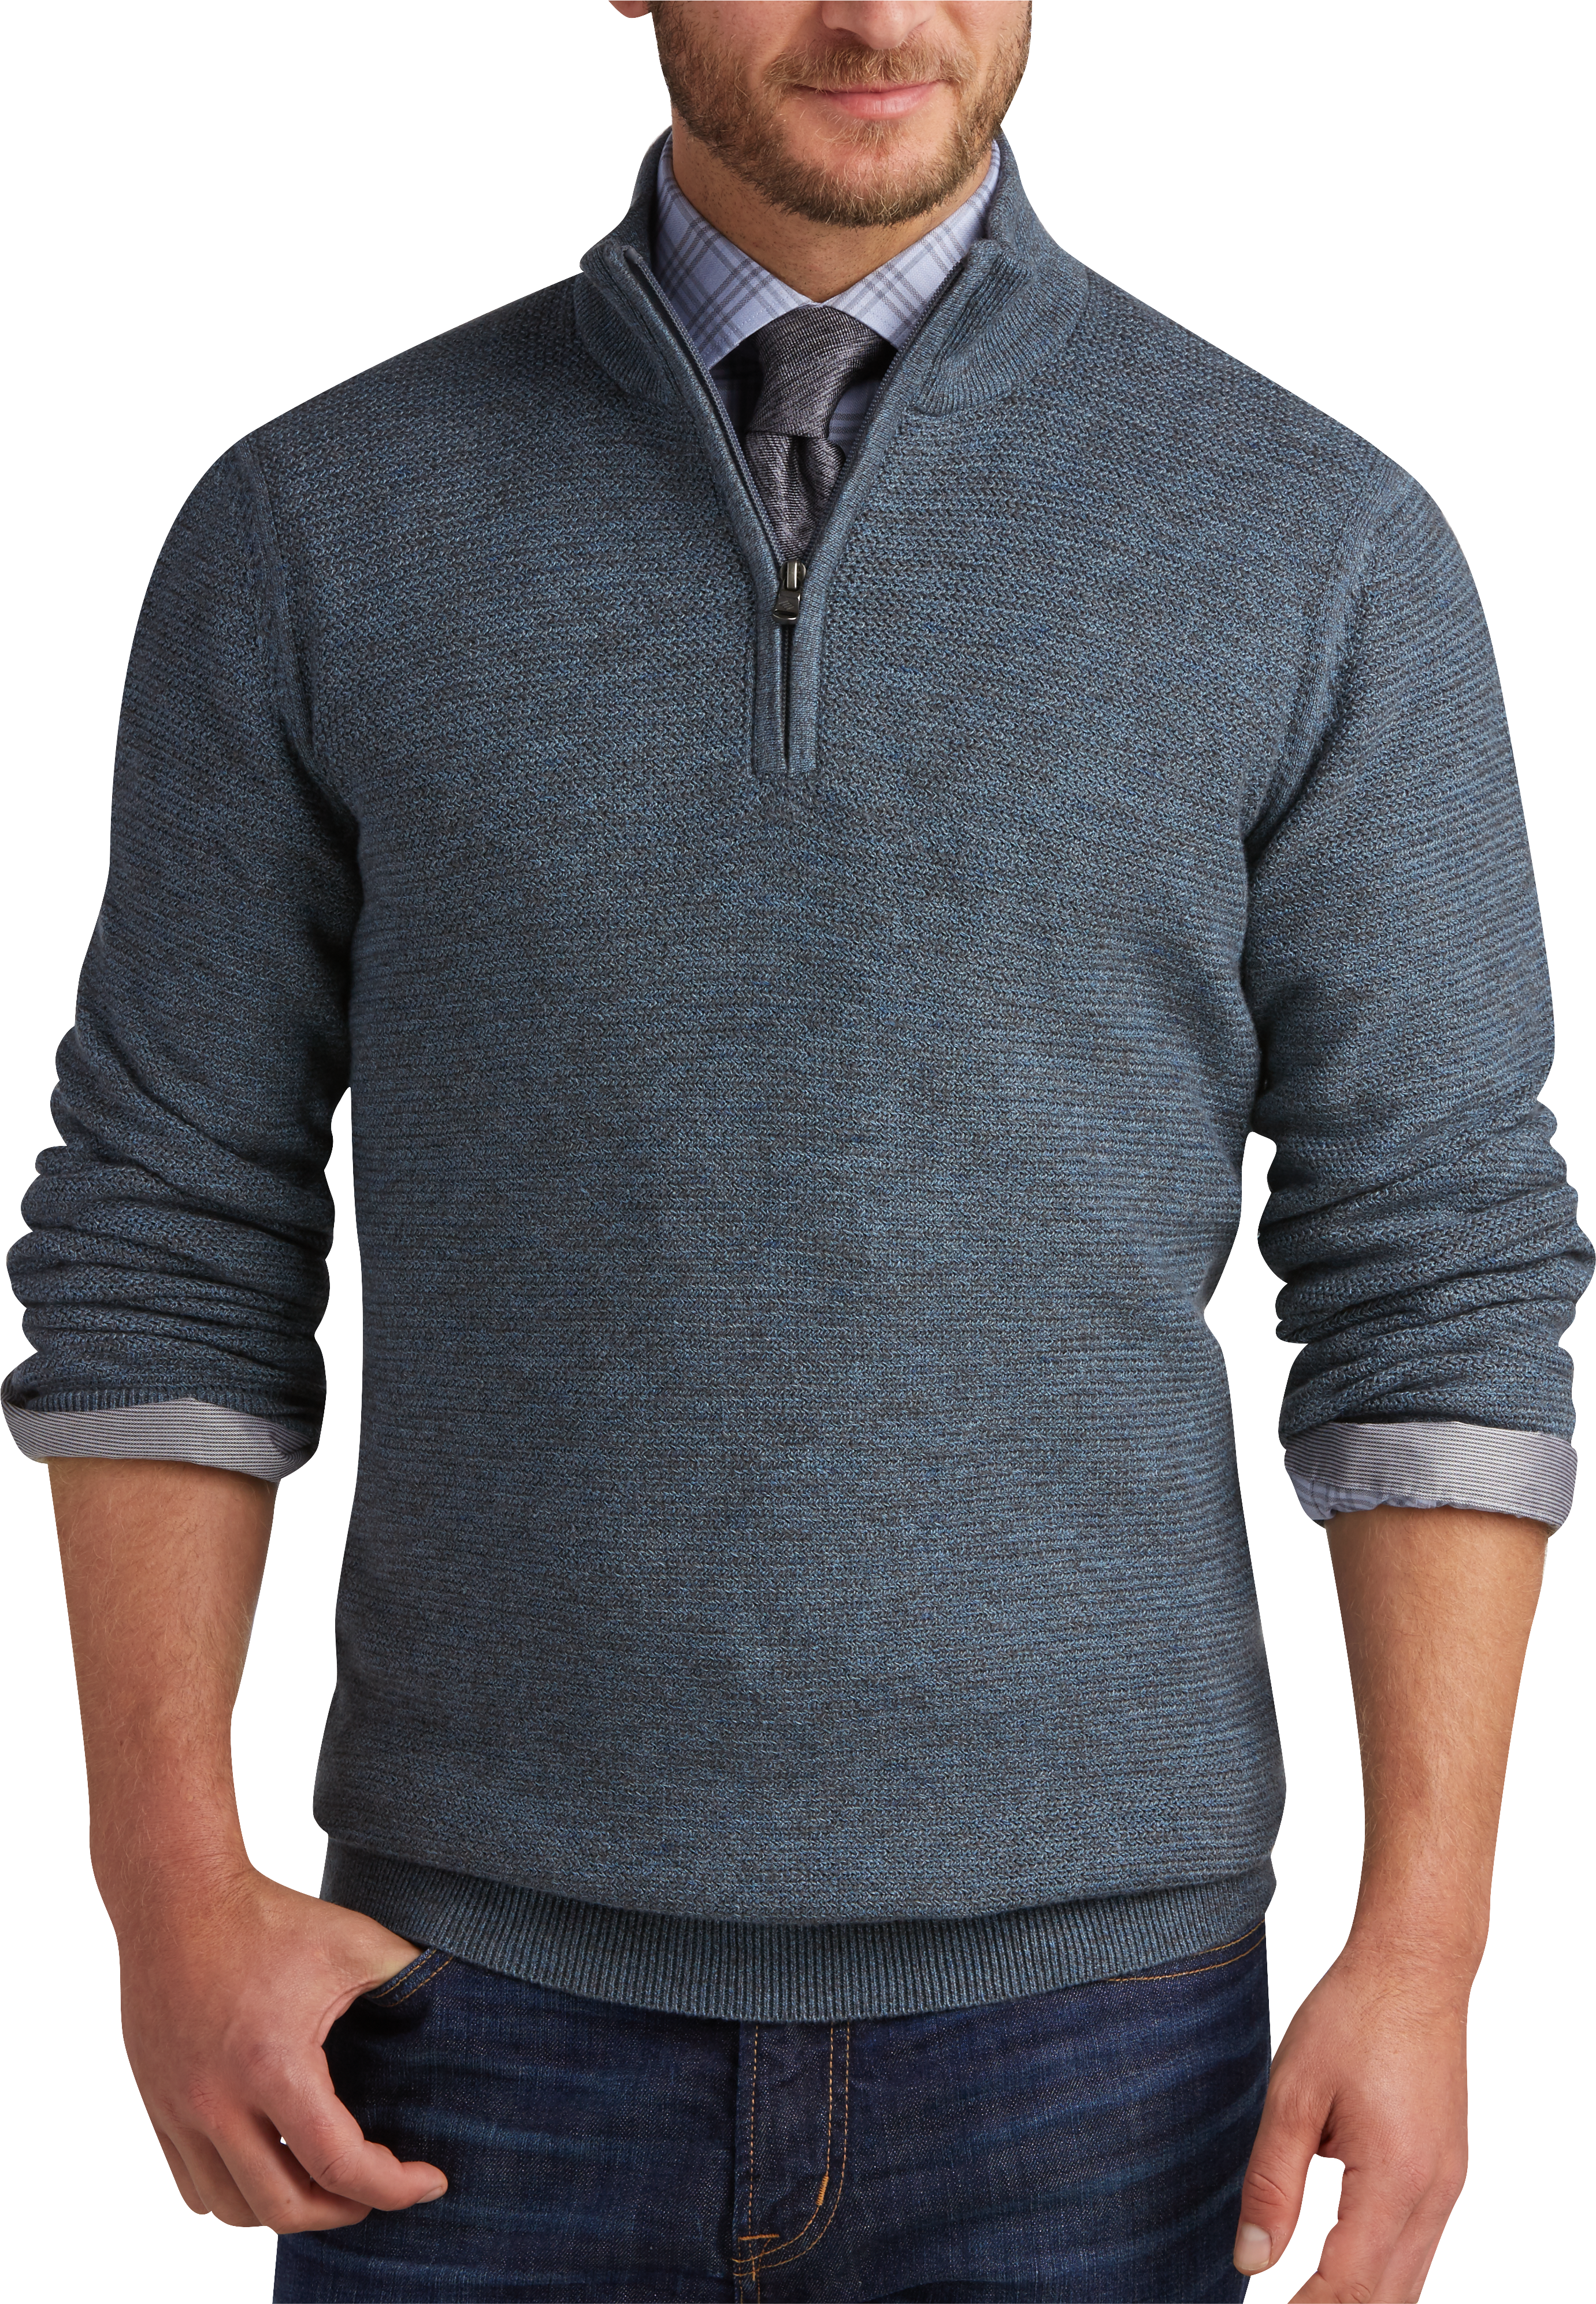 Men's Sweaters, Vests, Jackets & Hoodies | Men's Wearhouse